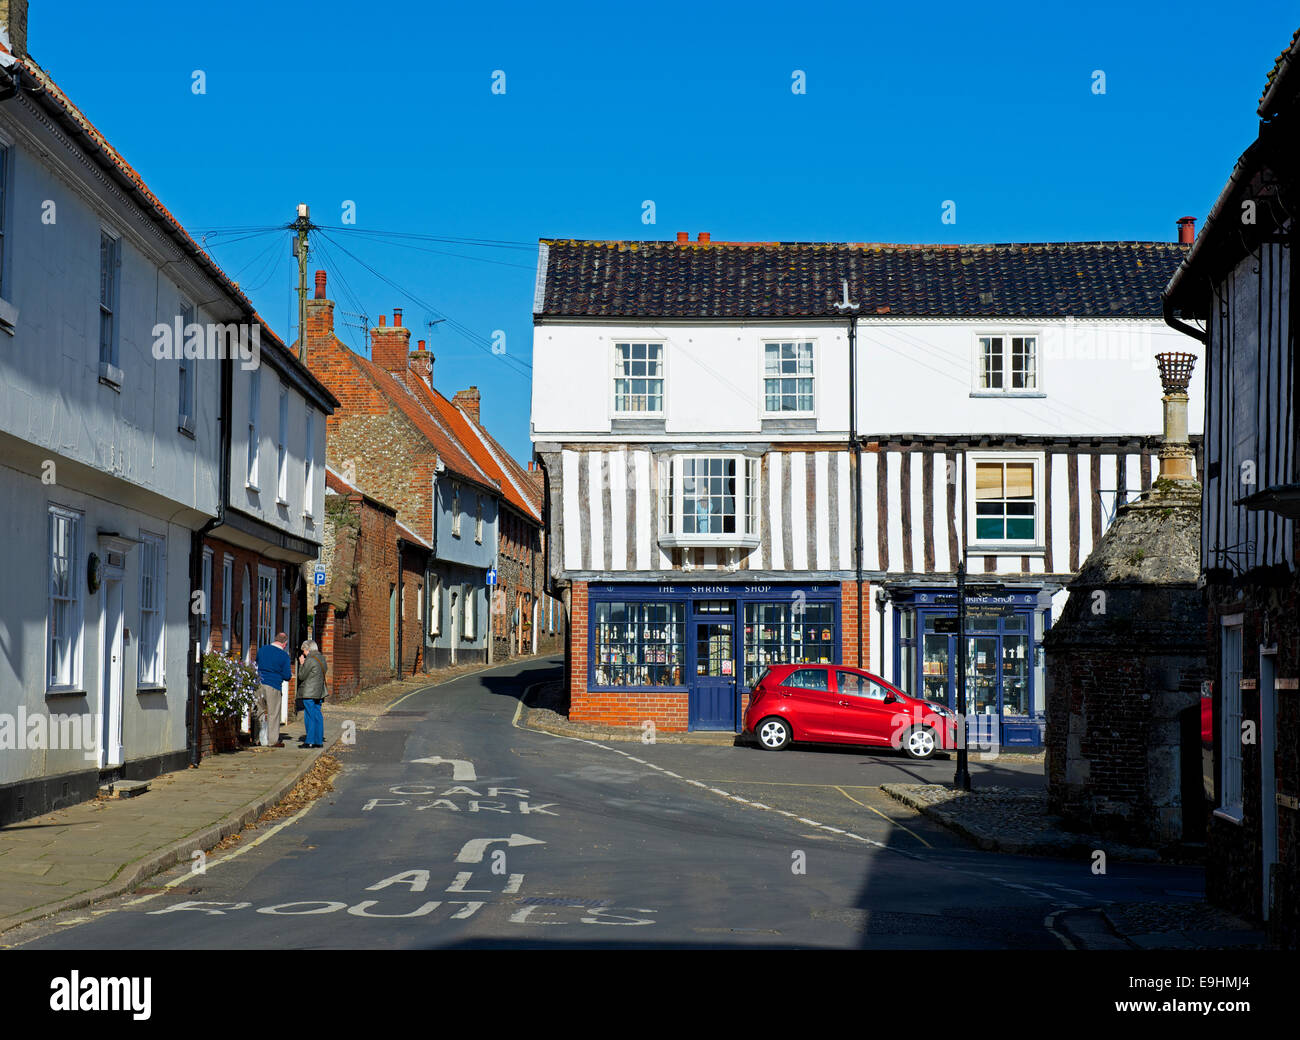 Le culte boutique, peu de Walsingham, Norfolk, Angleterre, Royaume-Uni Banque D'Images